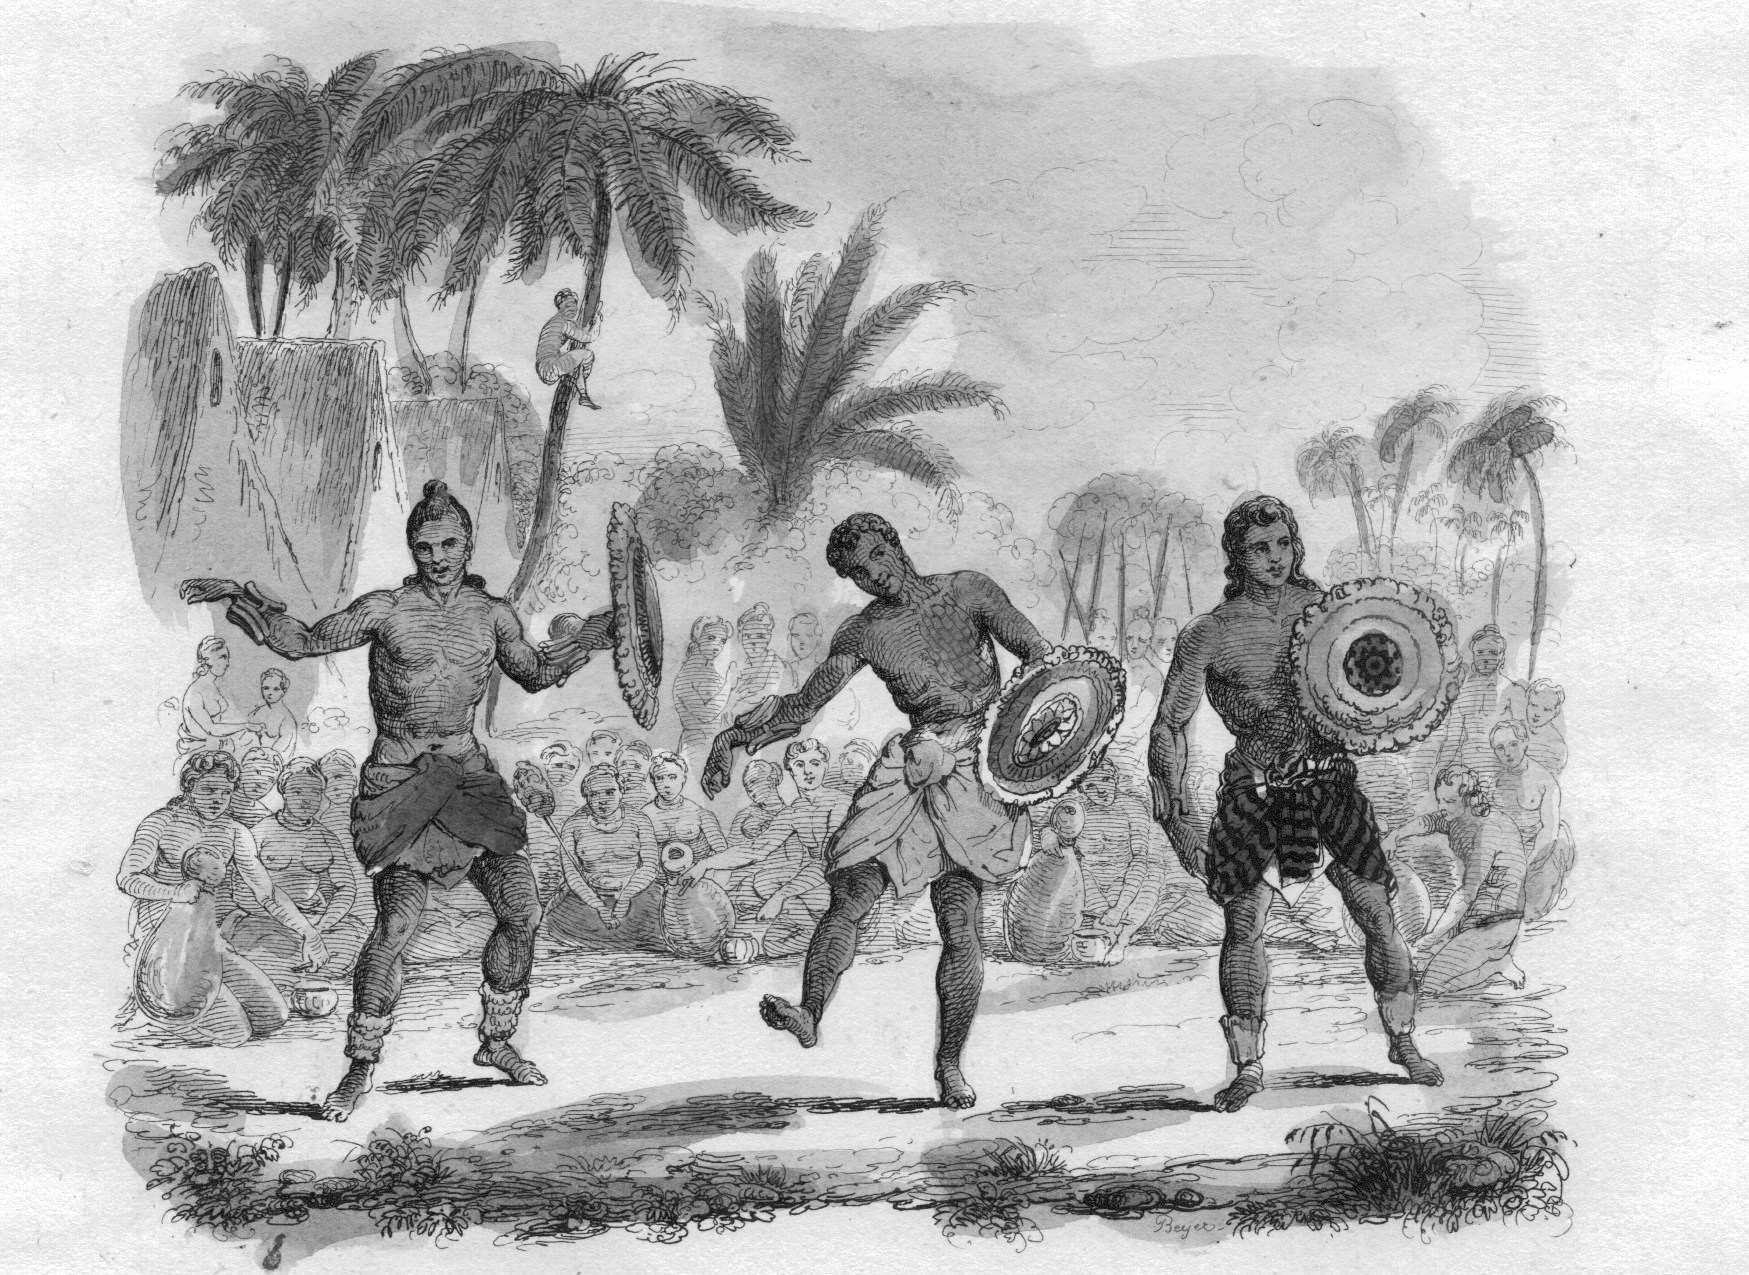 Des guerriers hawaiiens exécutant une danse : faire des prisonniers dans les combats permettait de disposer de victimes pour les sacrifices humains.